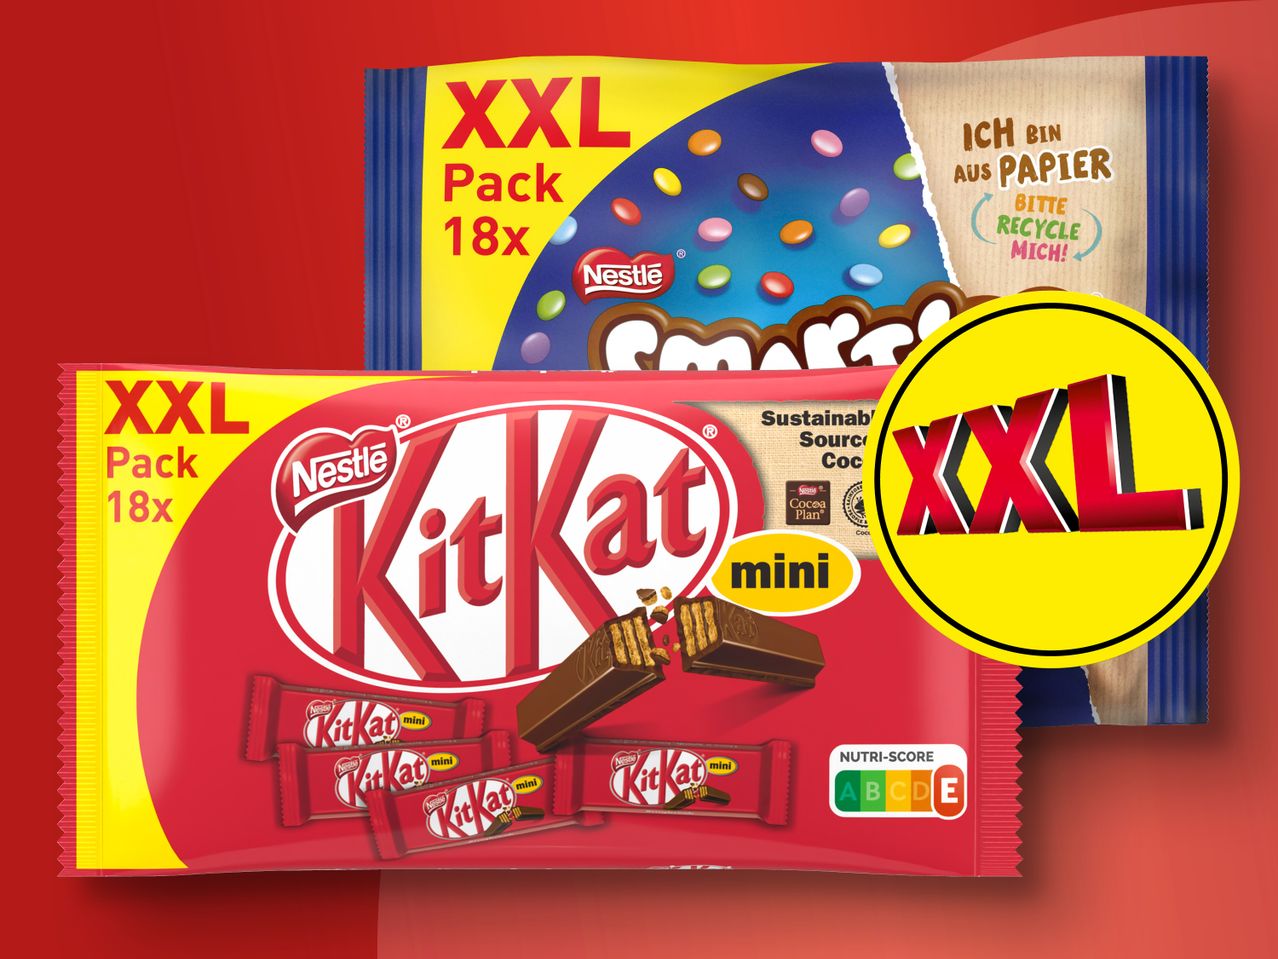 XXL Pack KitKat/Smarties Nestlé Mini